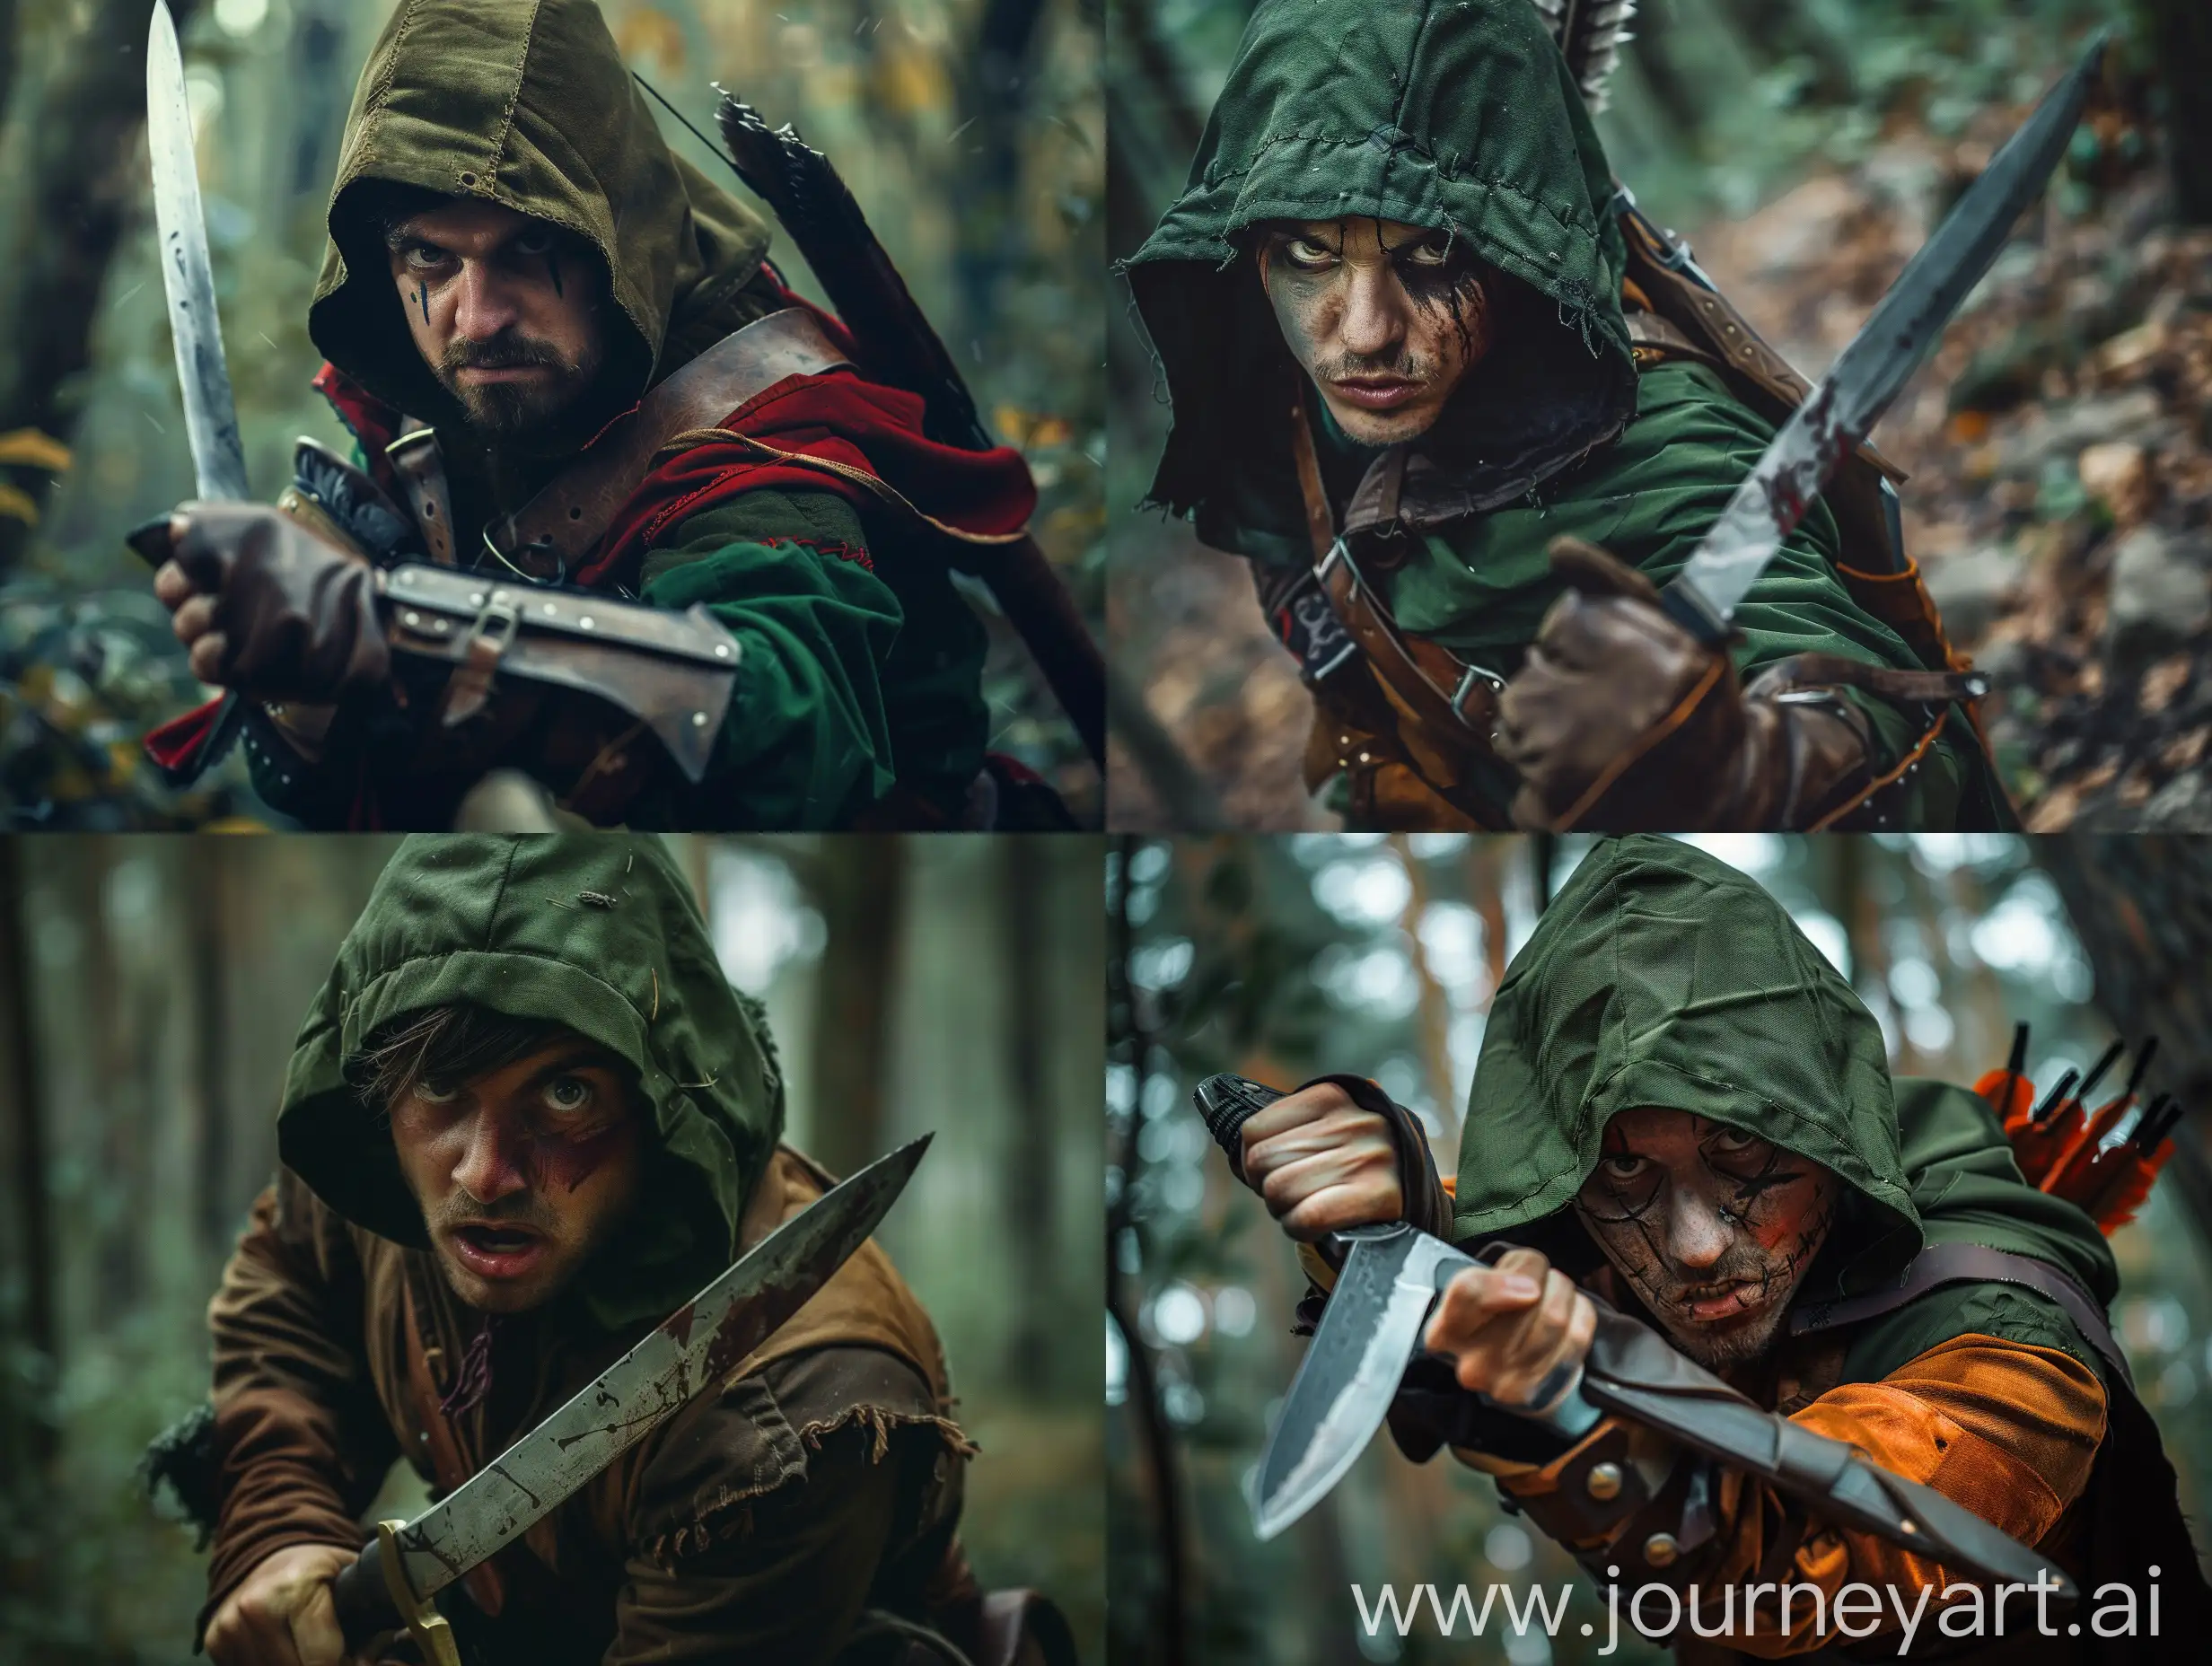 Fierce-Robin-Hood-Hunter-with-Knife-in-Forest